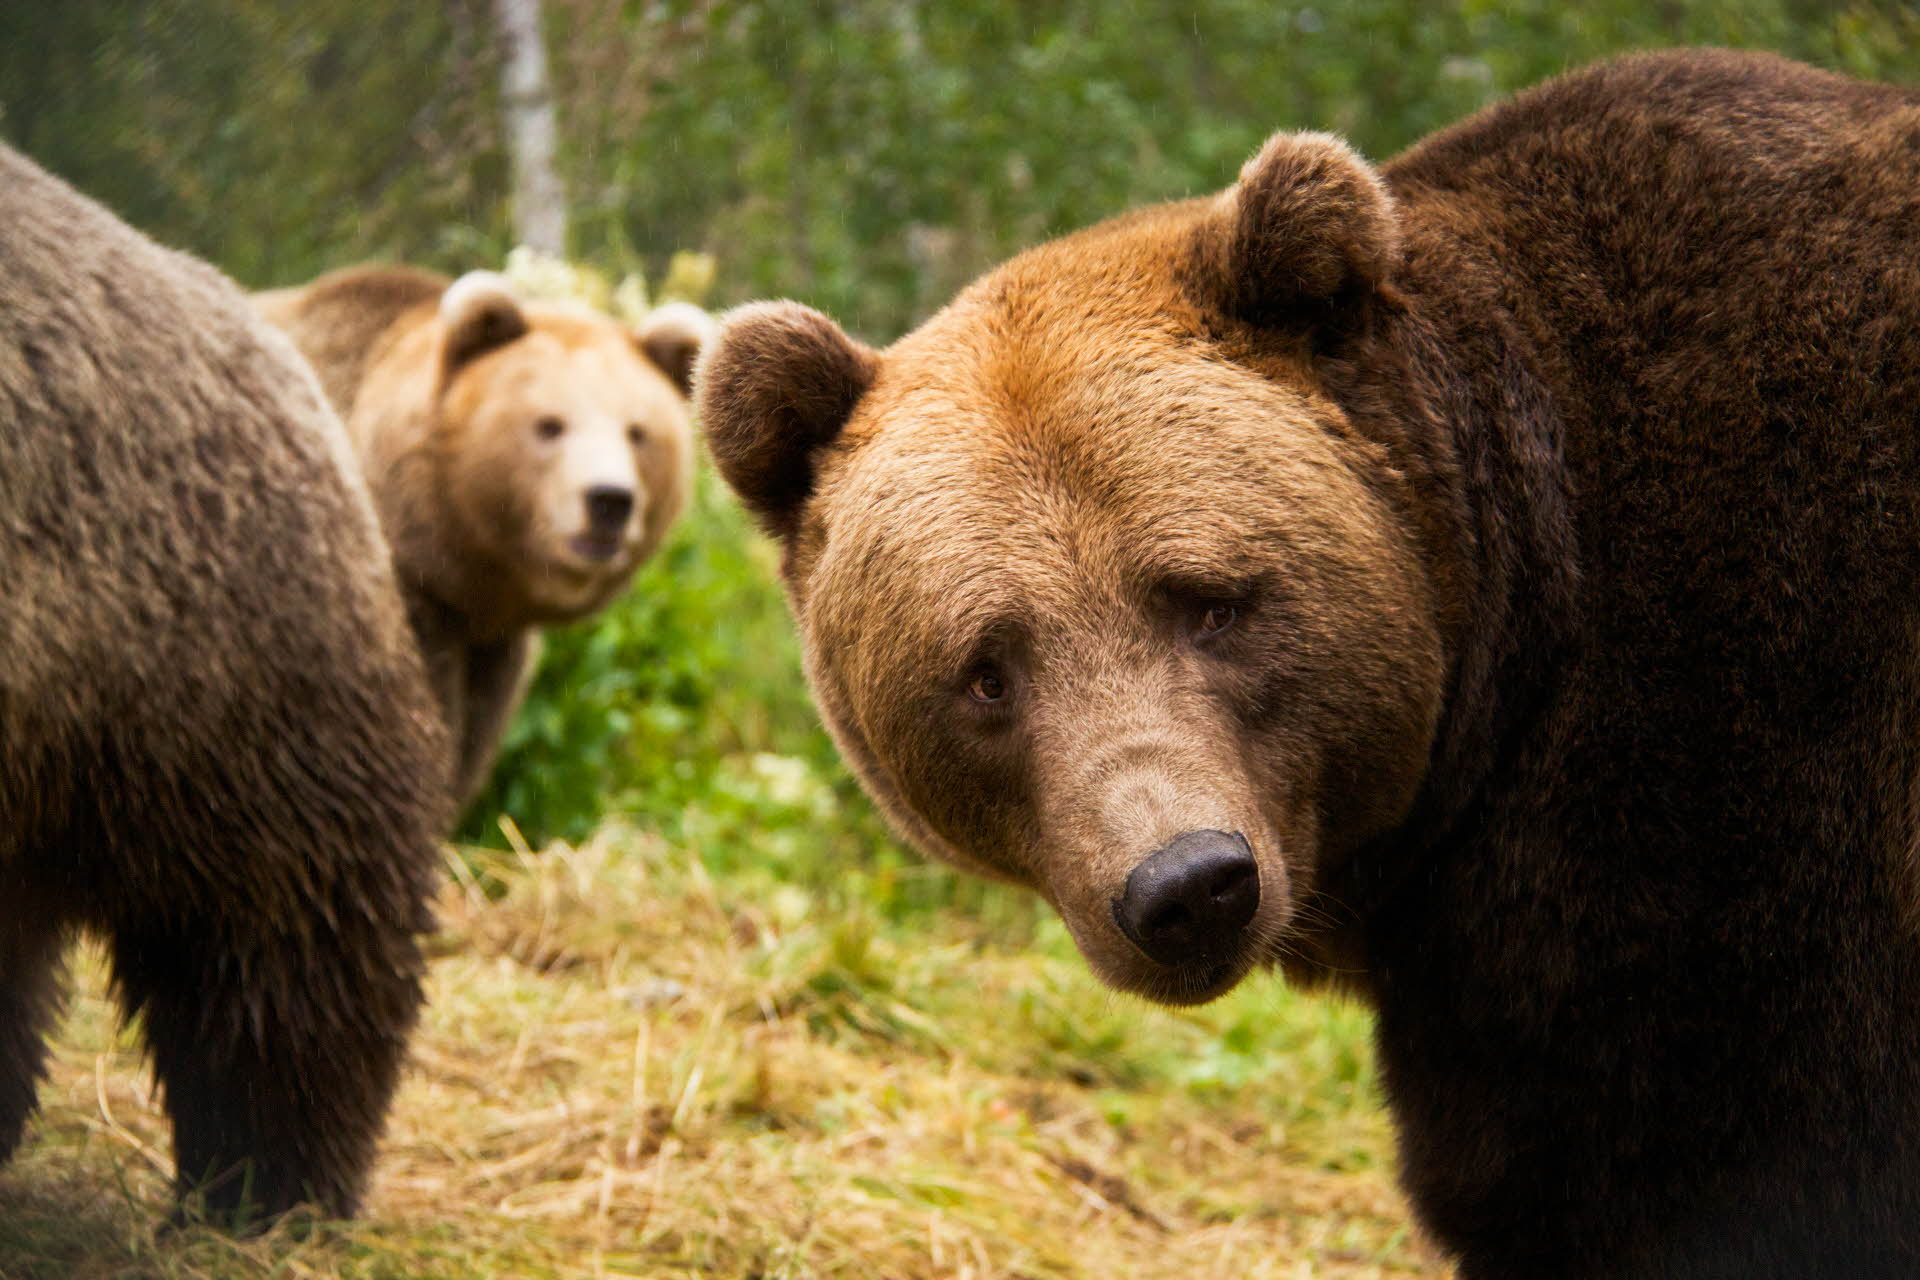 极地公园的两只棕熊正看着相机。第三只熊的背部。